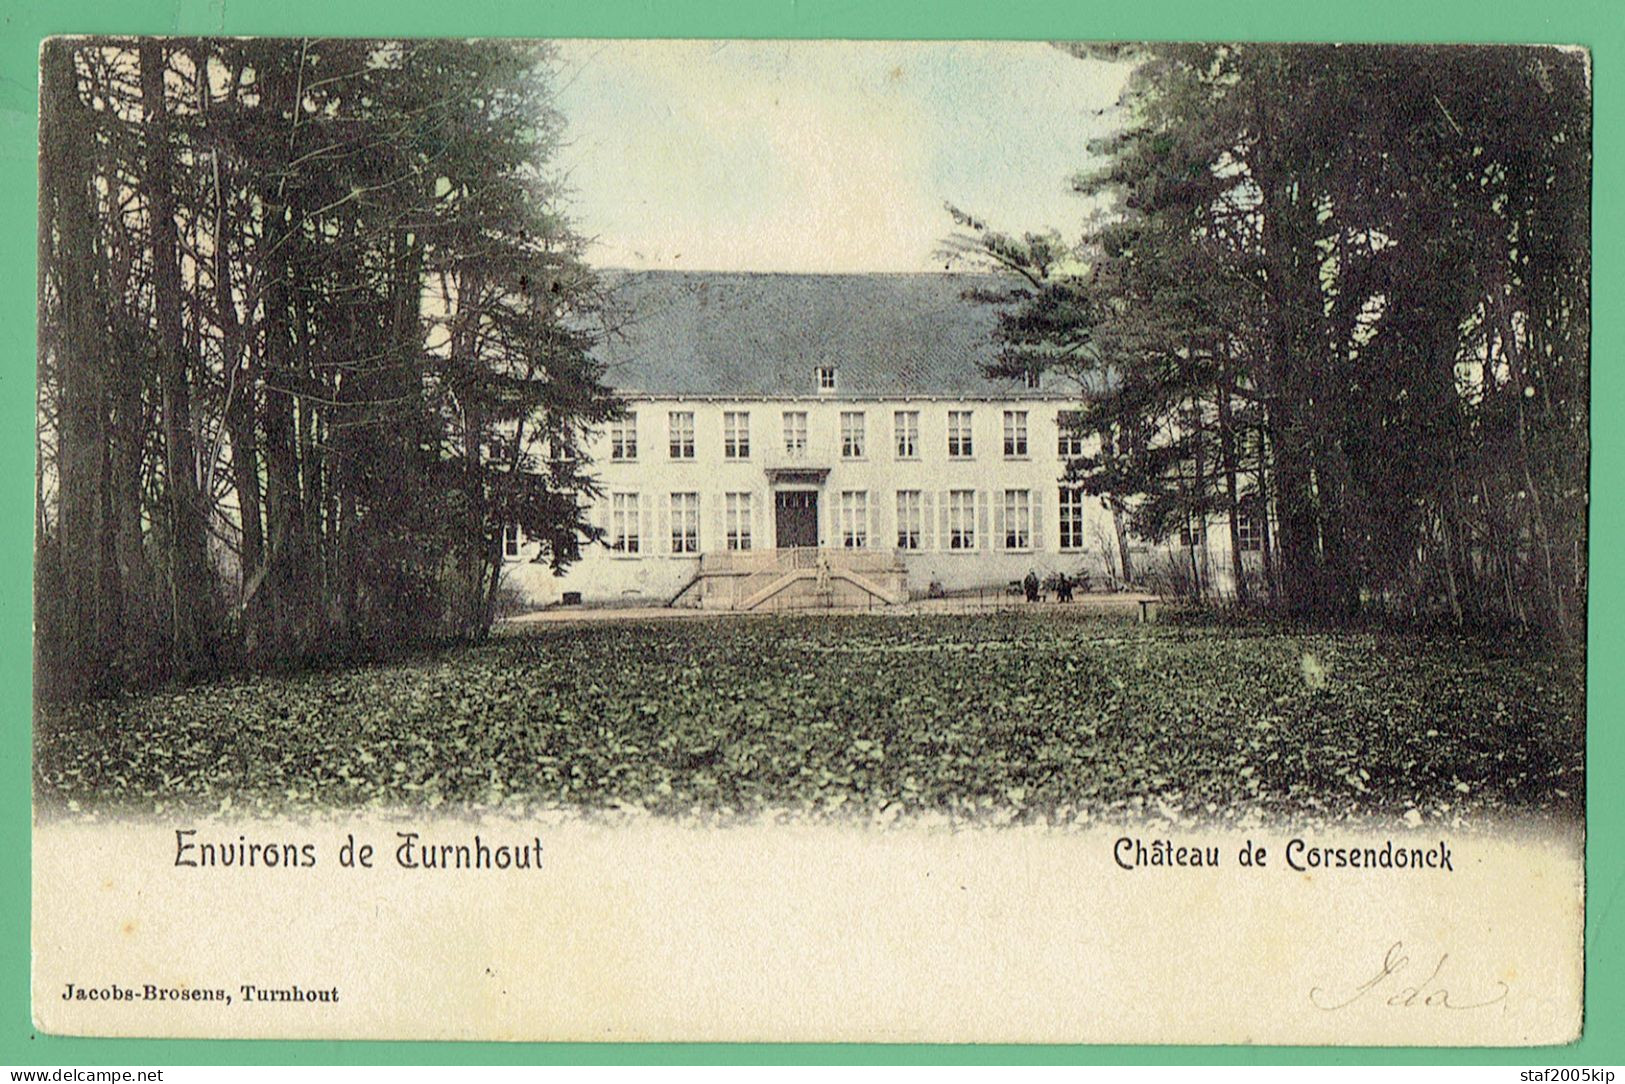 Environs De Turnhout - Château De Corsendonck - 1904 - Kleur - Oud-Turnhout